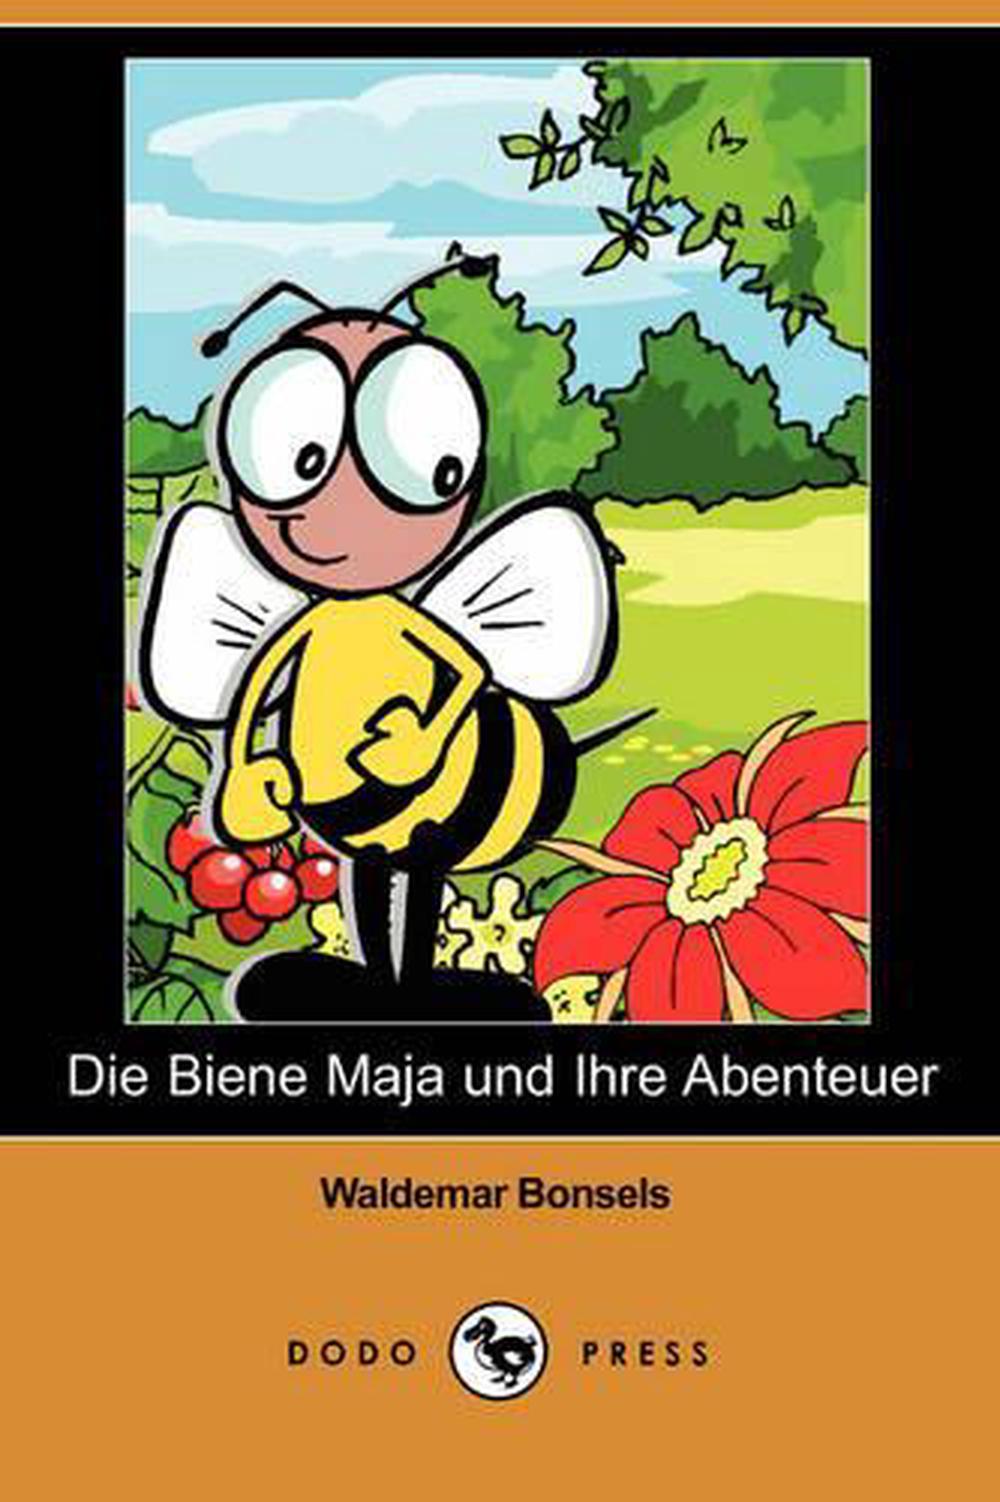 Die Biene Maja Und Ihre Abenteuer (Dodo Press) by Waldemar Bonsels - Kinderbuch Von 1912 Die Biene Maja Und Ihre